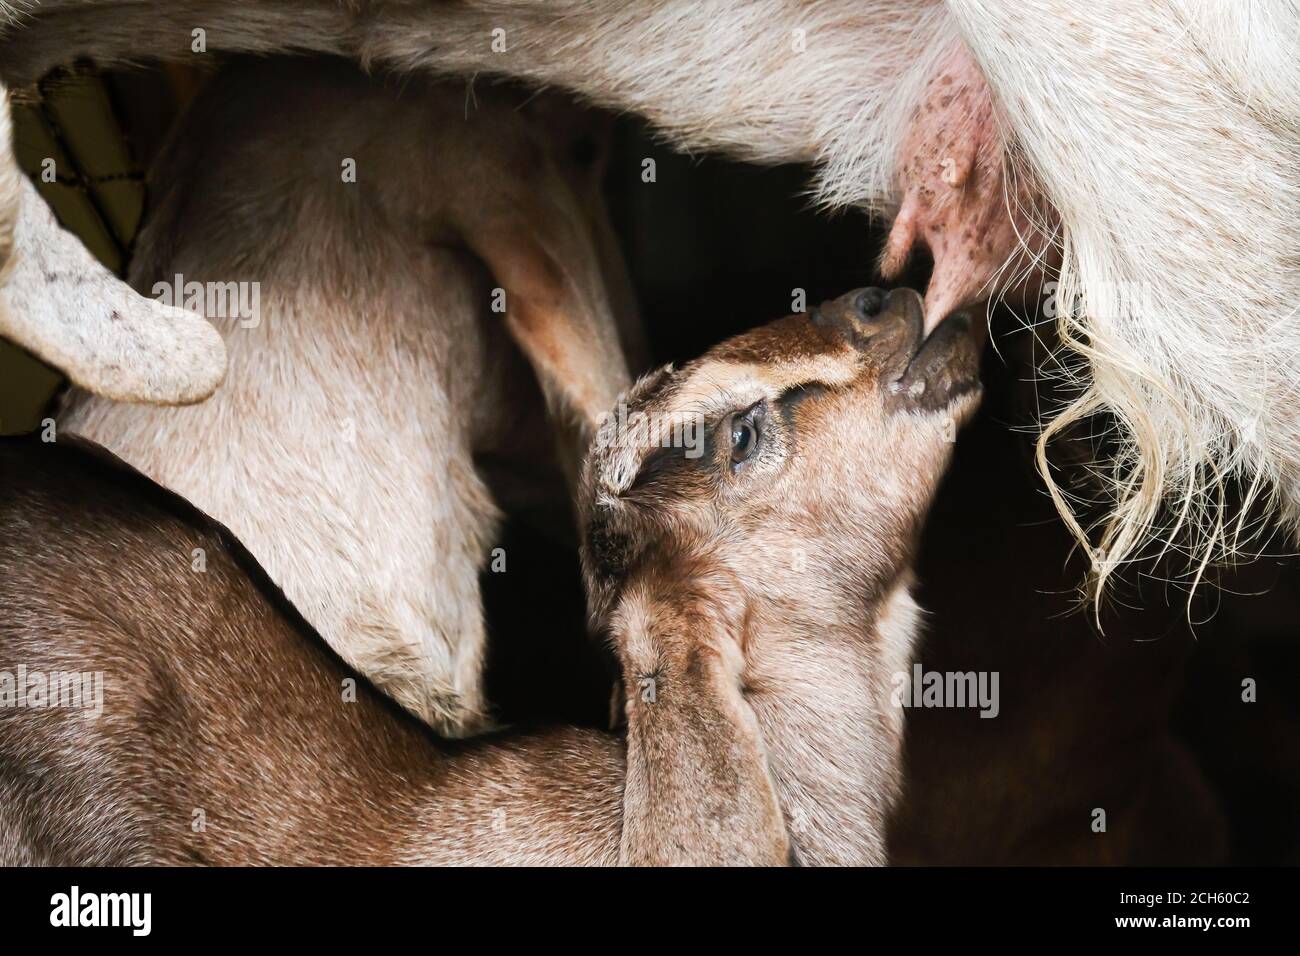 Ein Kindermädchen Ziege säugt sein Kind, Mutter Ziege säugt schöne weiße Kind in Holzunterstand. Nahaufnahme. Stockfoto